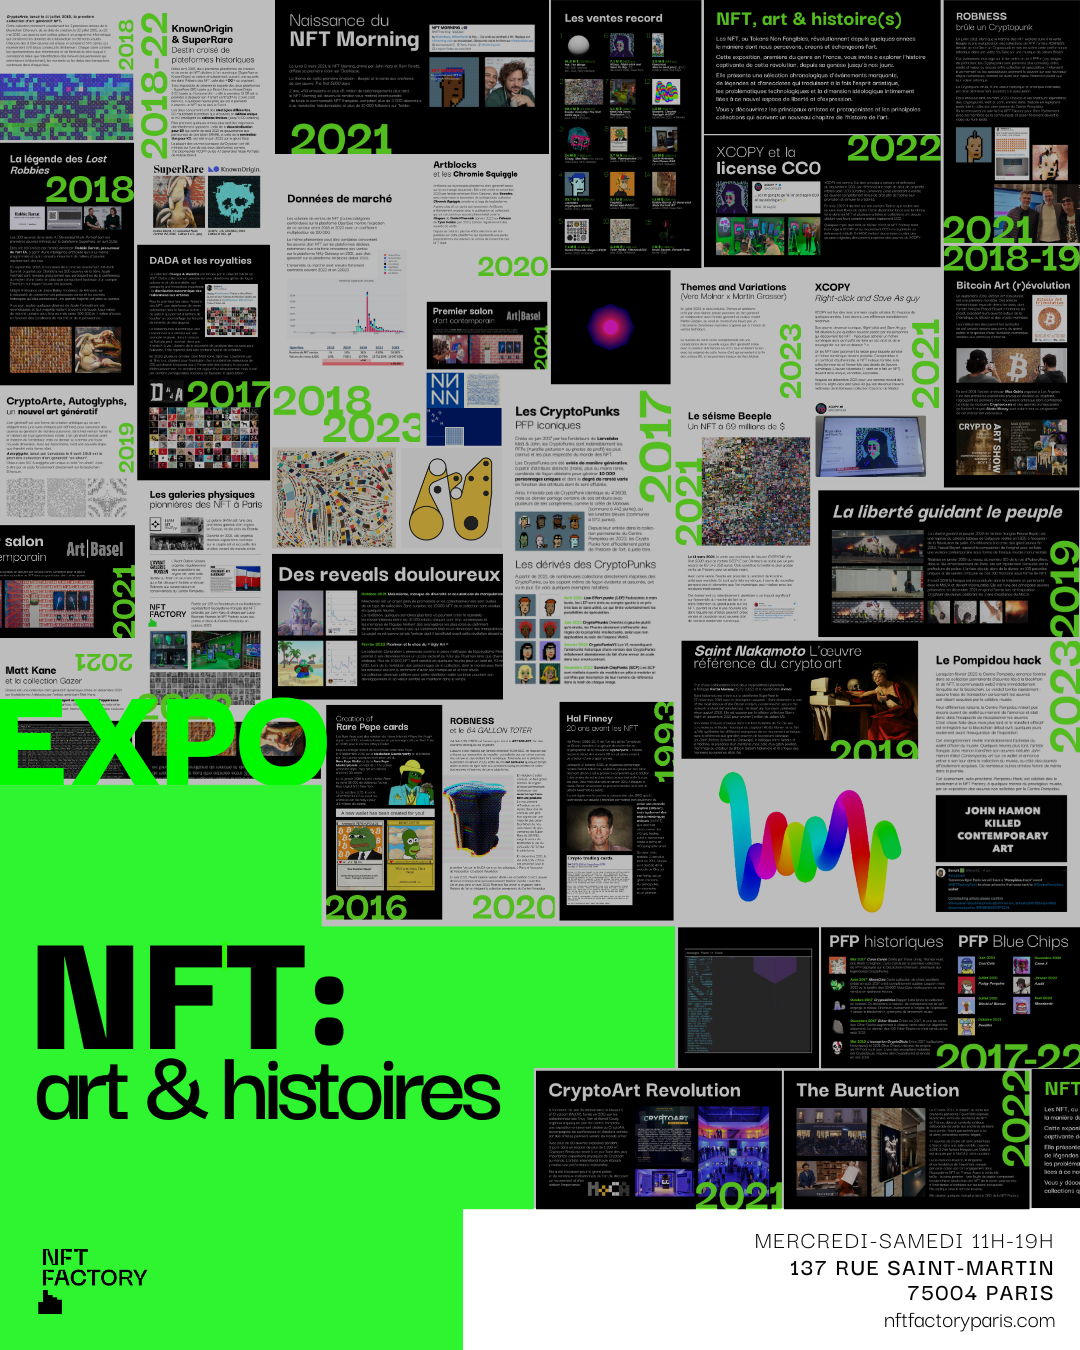 Billet d'entrée "NFT : art & histoires" - Tarif DUO